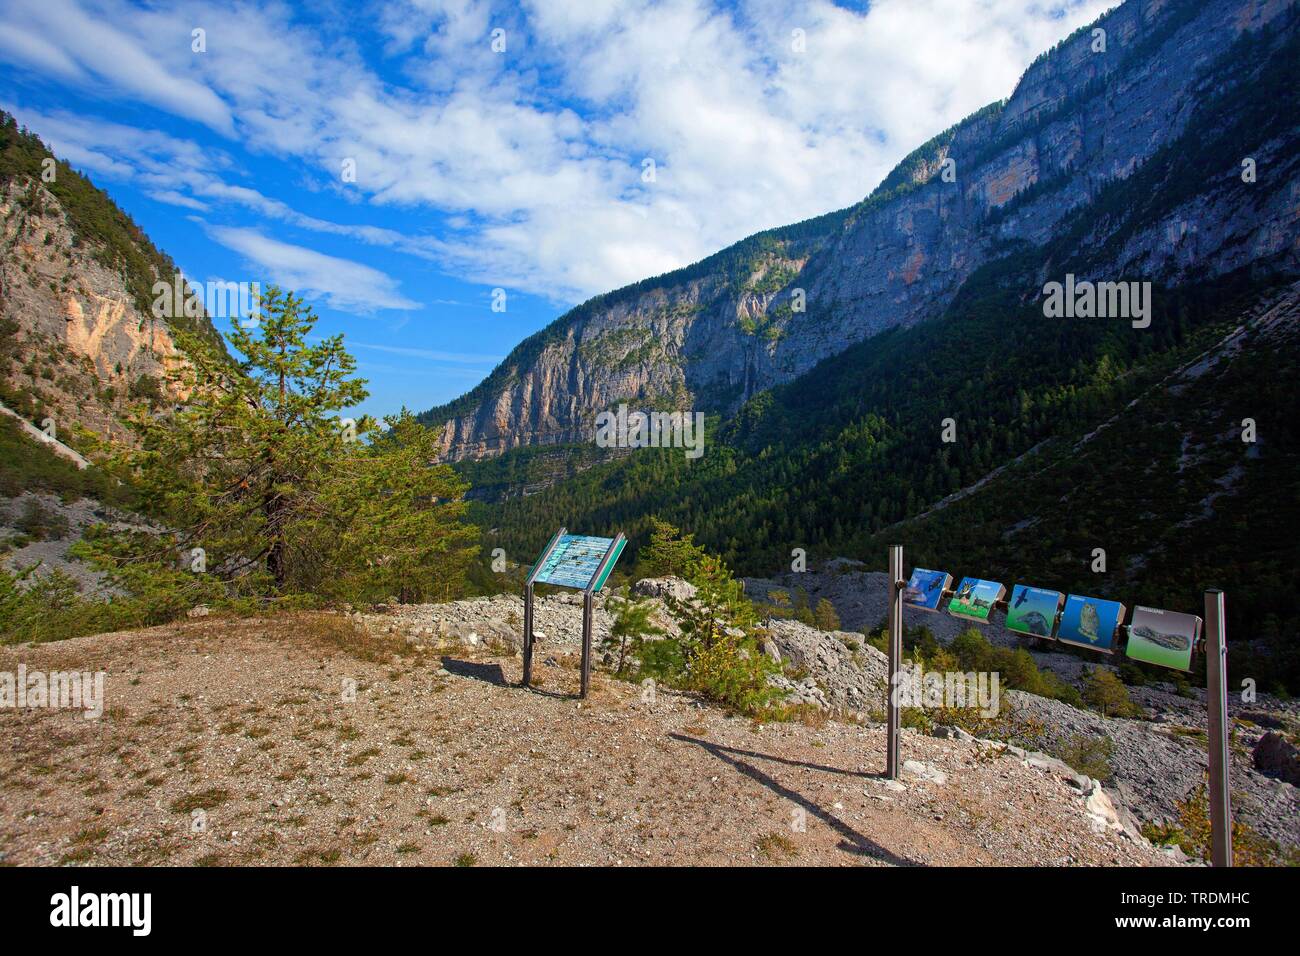 Valle di Tovel, lake tovel, Brenta mountains, Italy, South Tyrol, Trentino Stock Photo